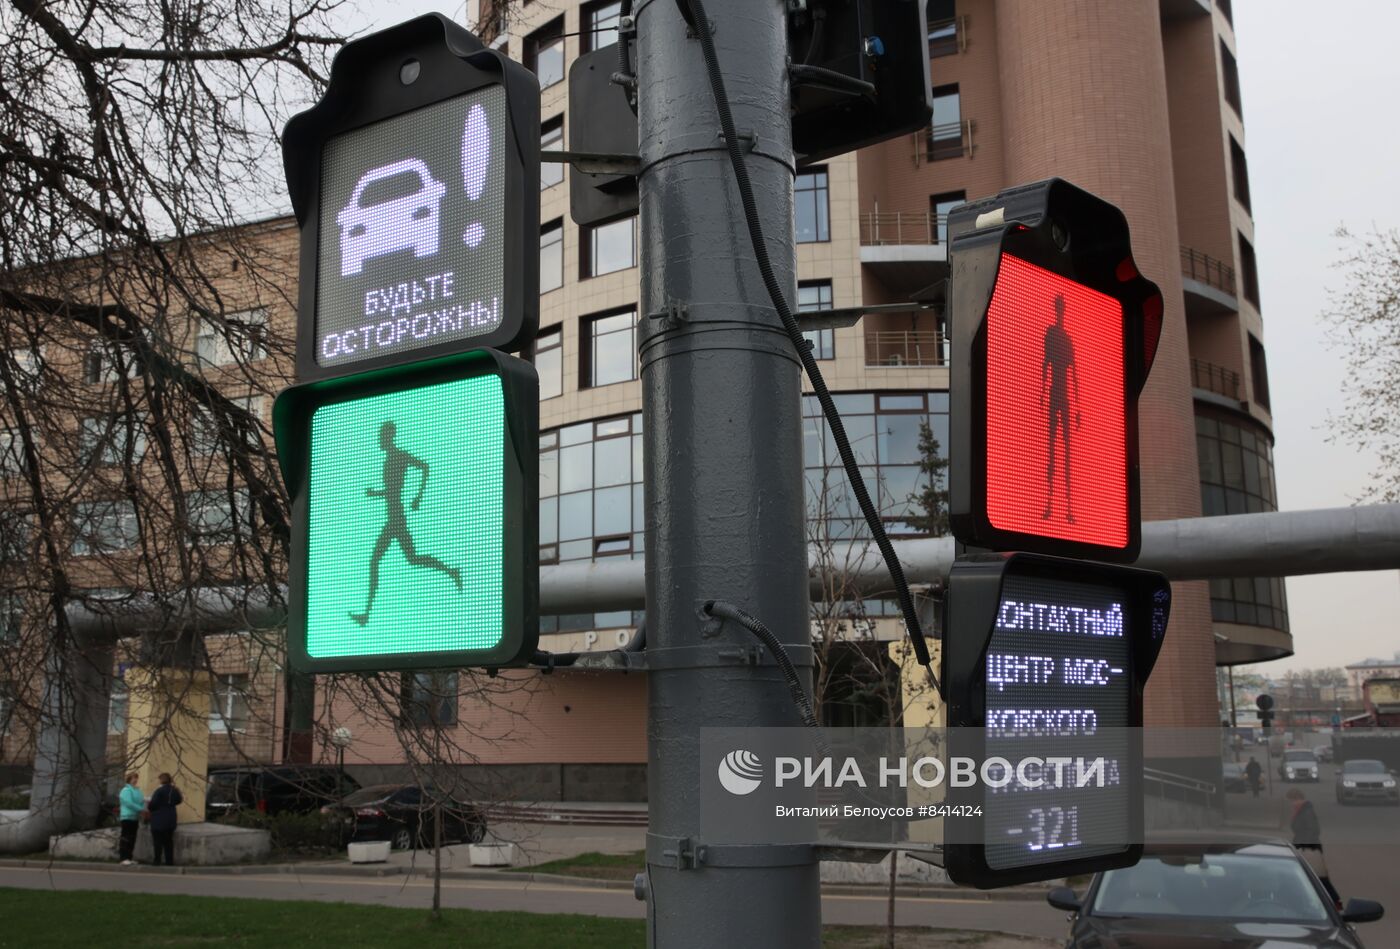 "Инновационный светофор" установили на Бережковской набережной в Москве